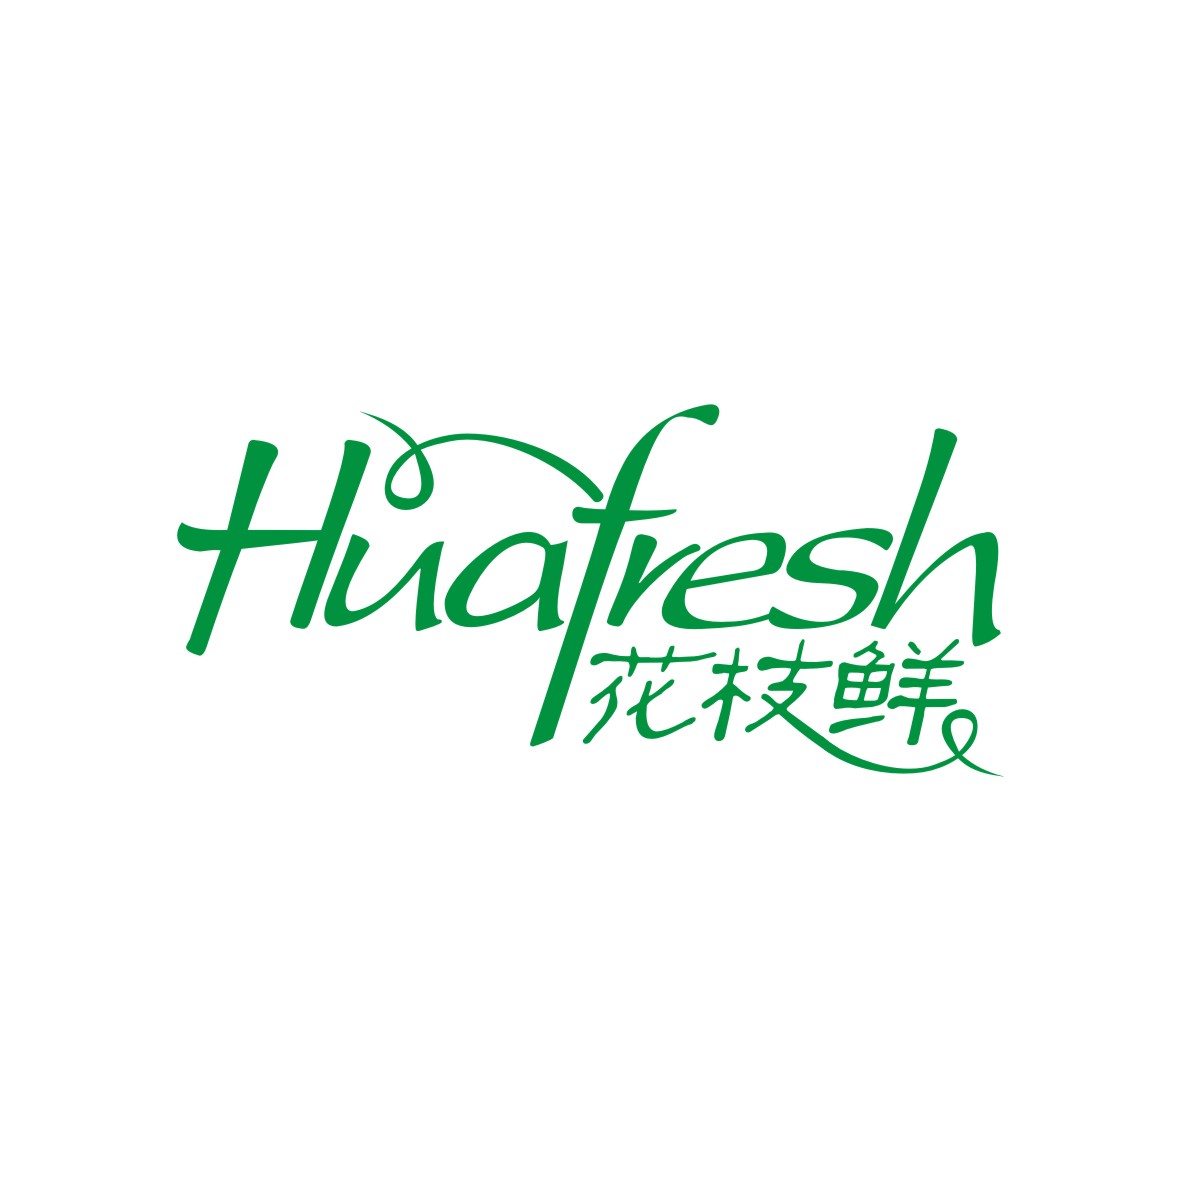 广州品翰文化发展有限公司商标花枝鲜 HUAFRESH（31类）多少钱？